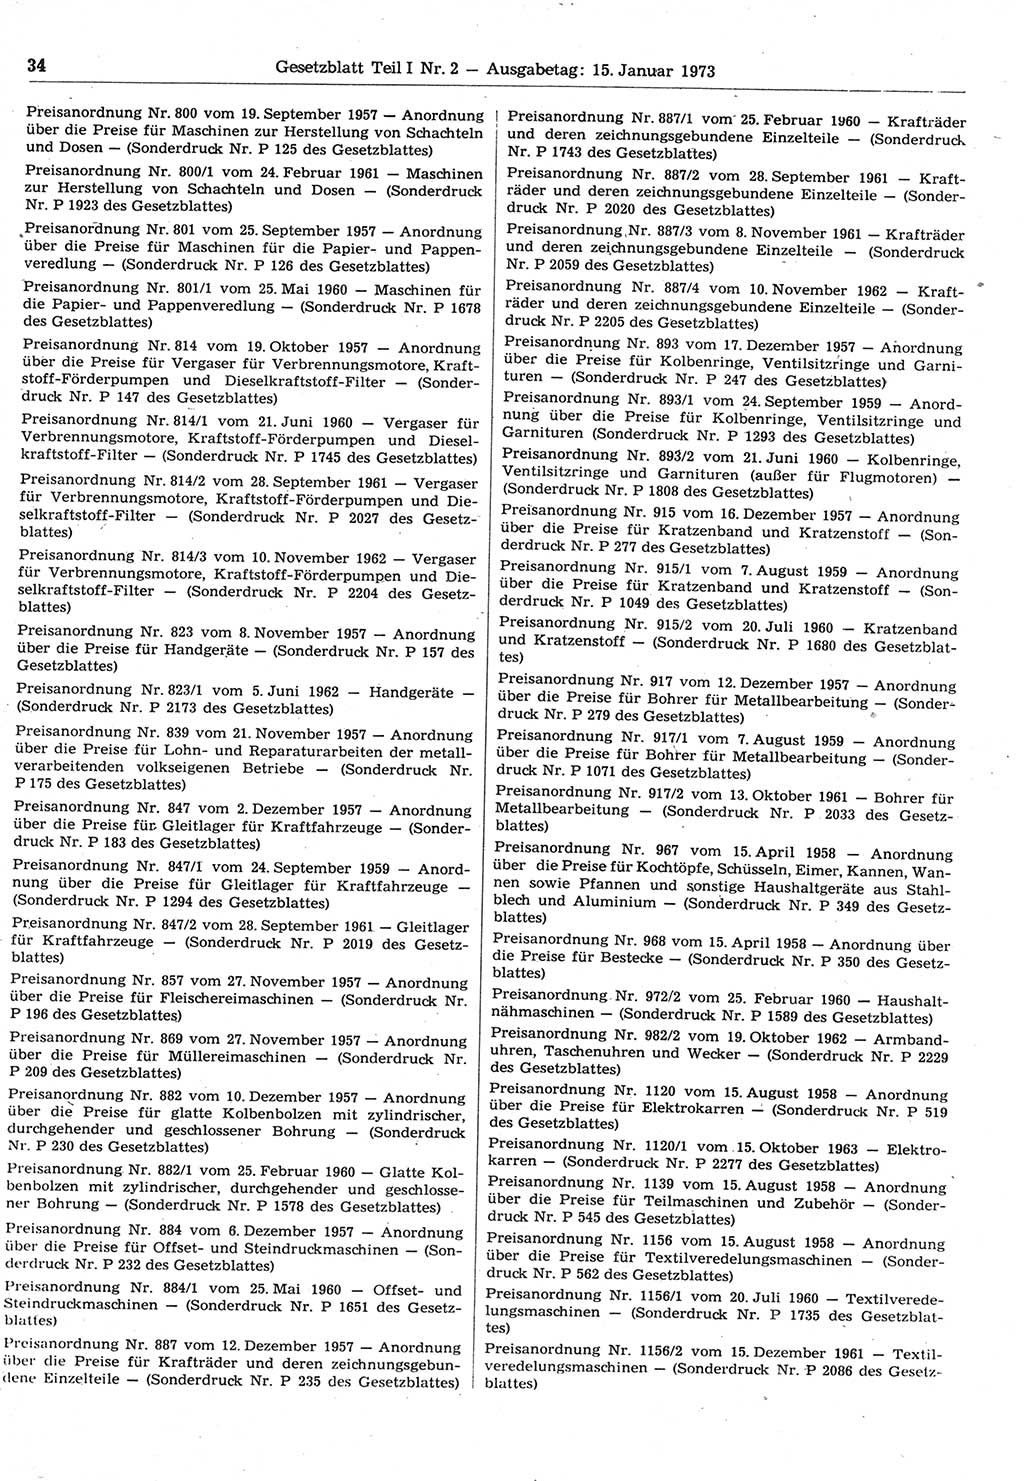 Gesetzblatt (GBl.) der Deutschen Demokratischen Republik (DDR) Teil Ⅰ 1973, Seite 34 (GBl. DDR Ⅰ 1973, S. 34)